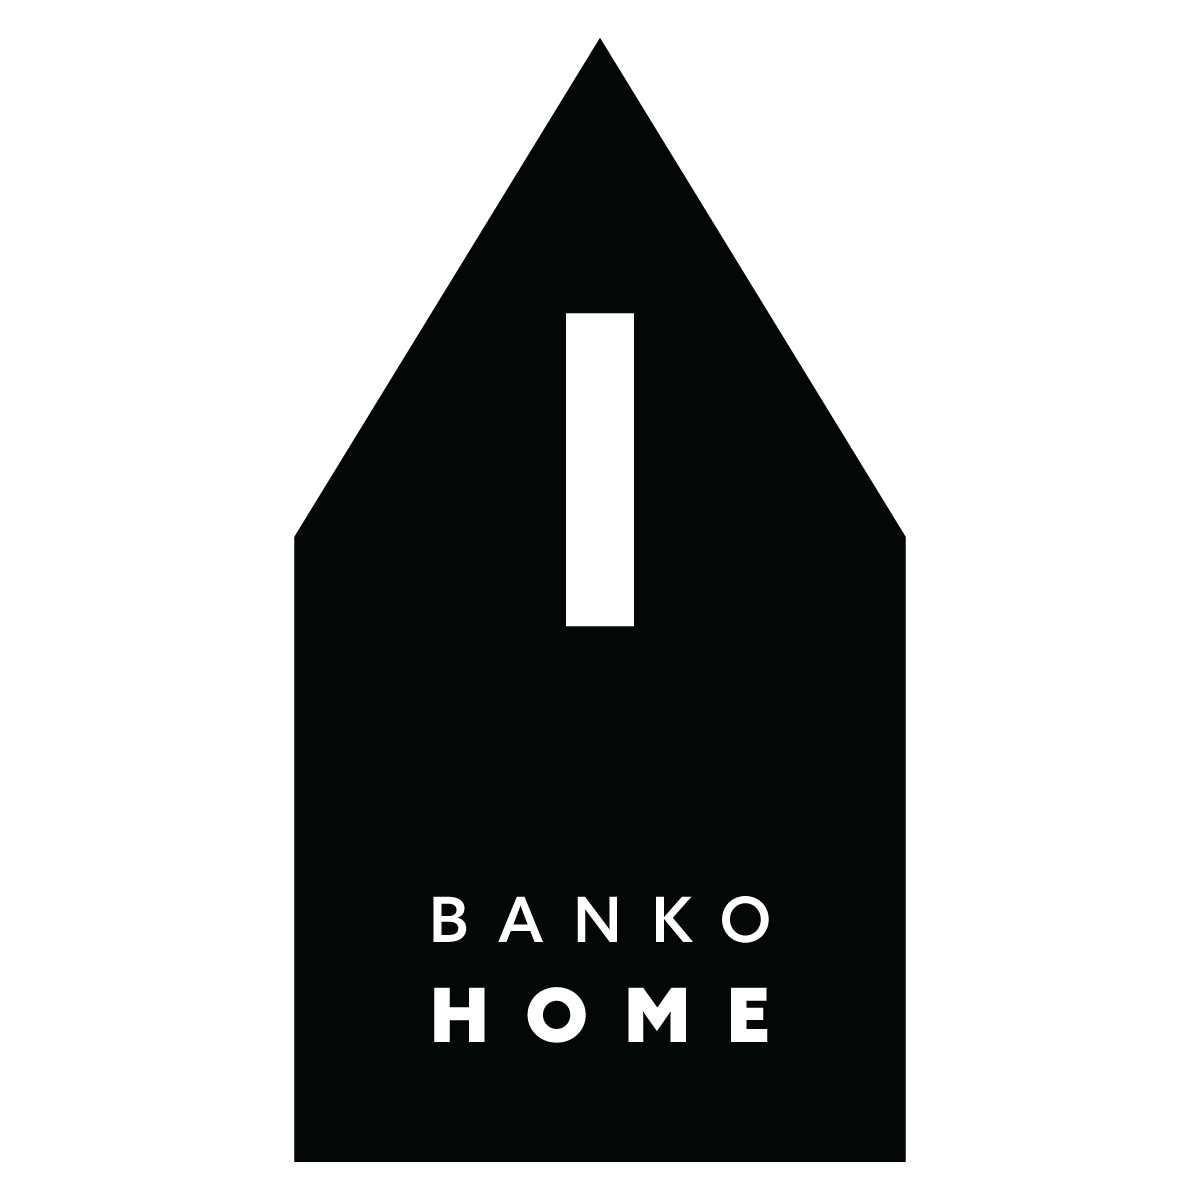 Banko Home